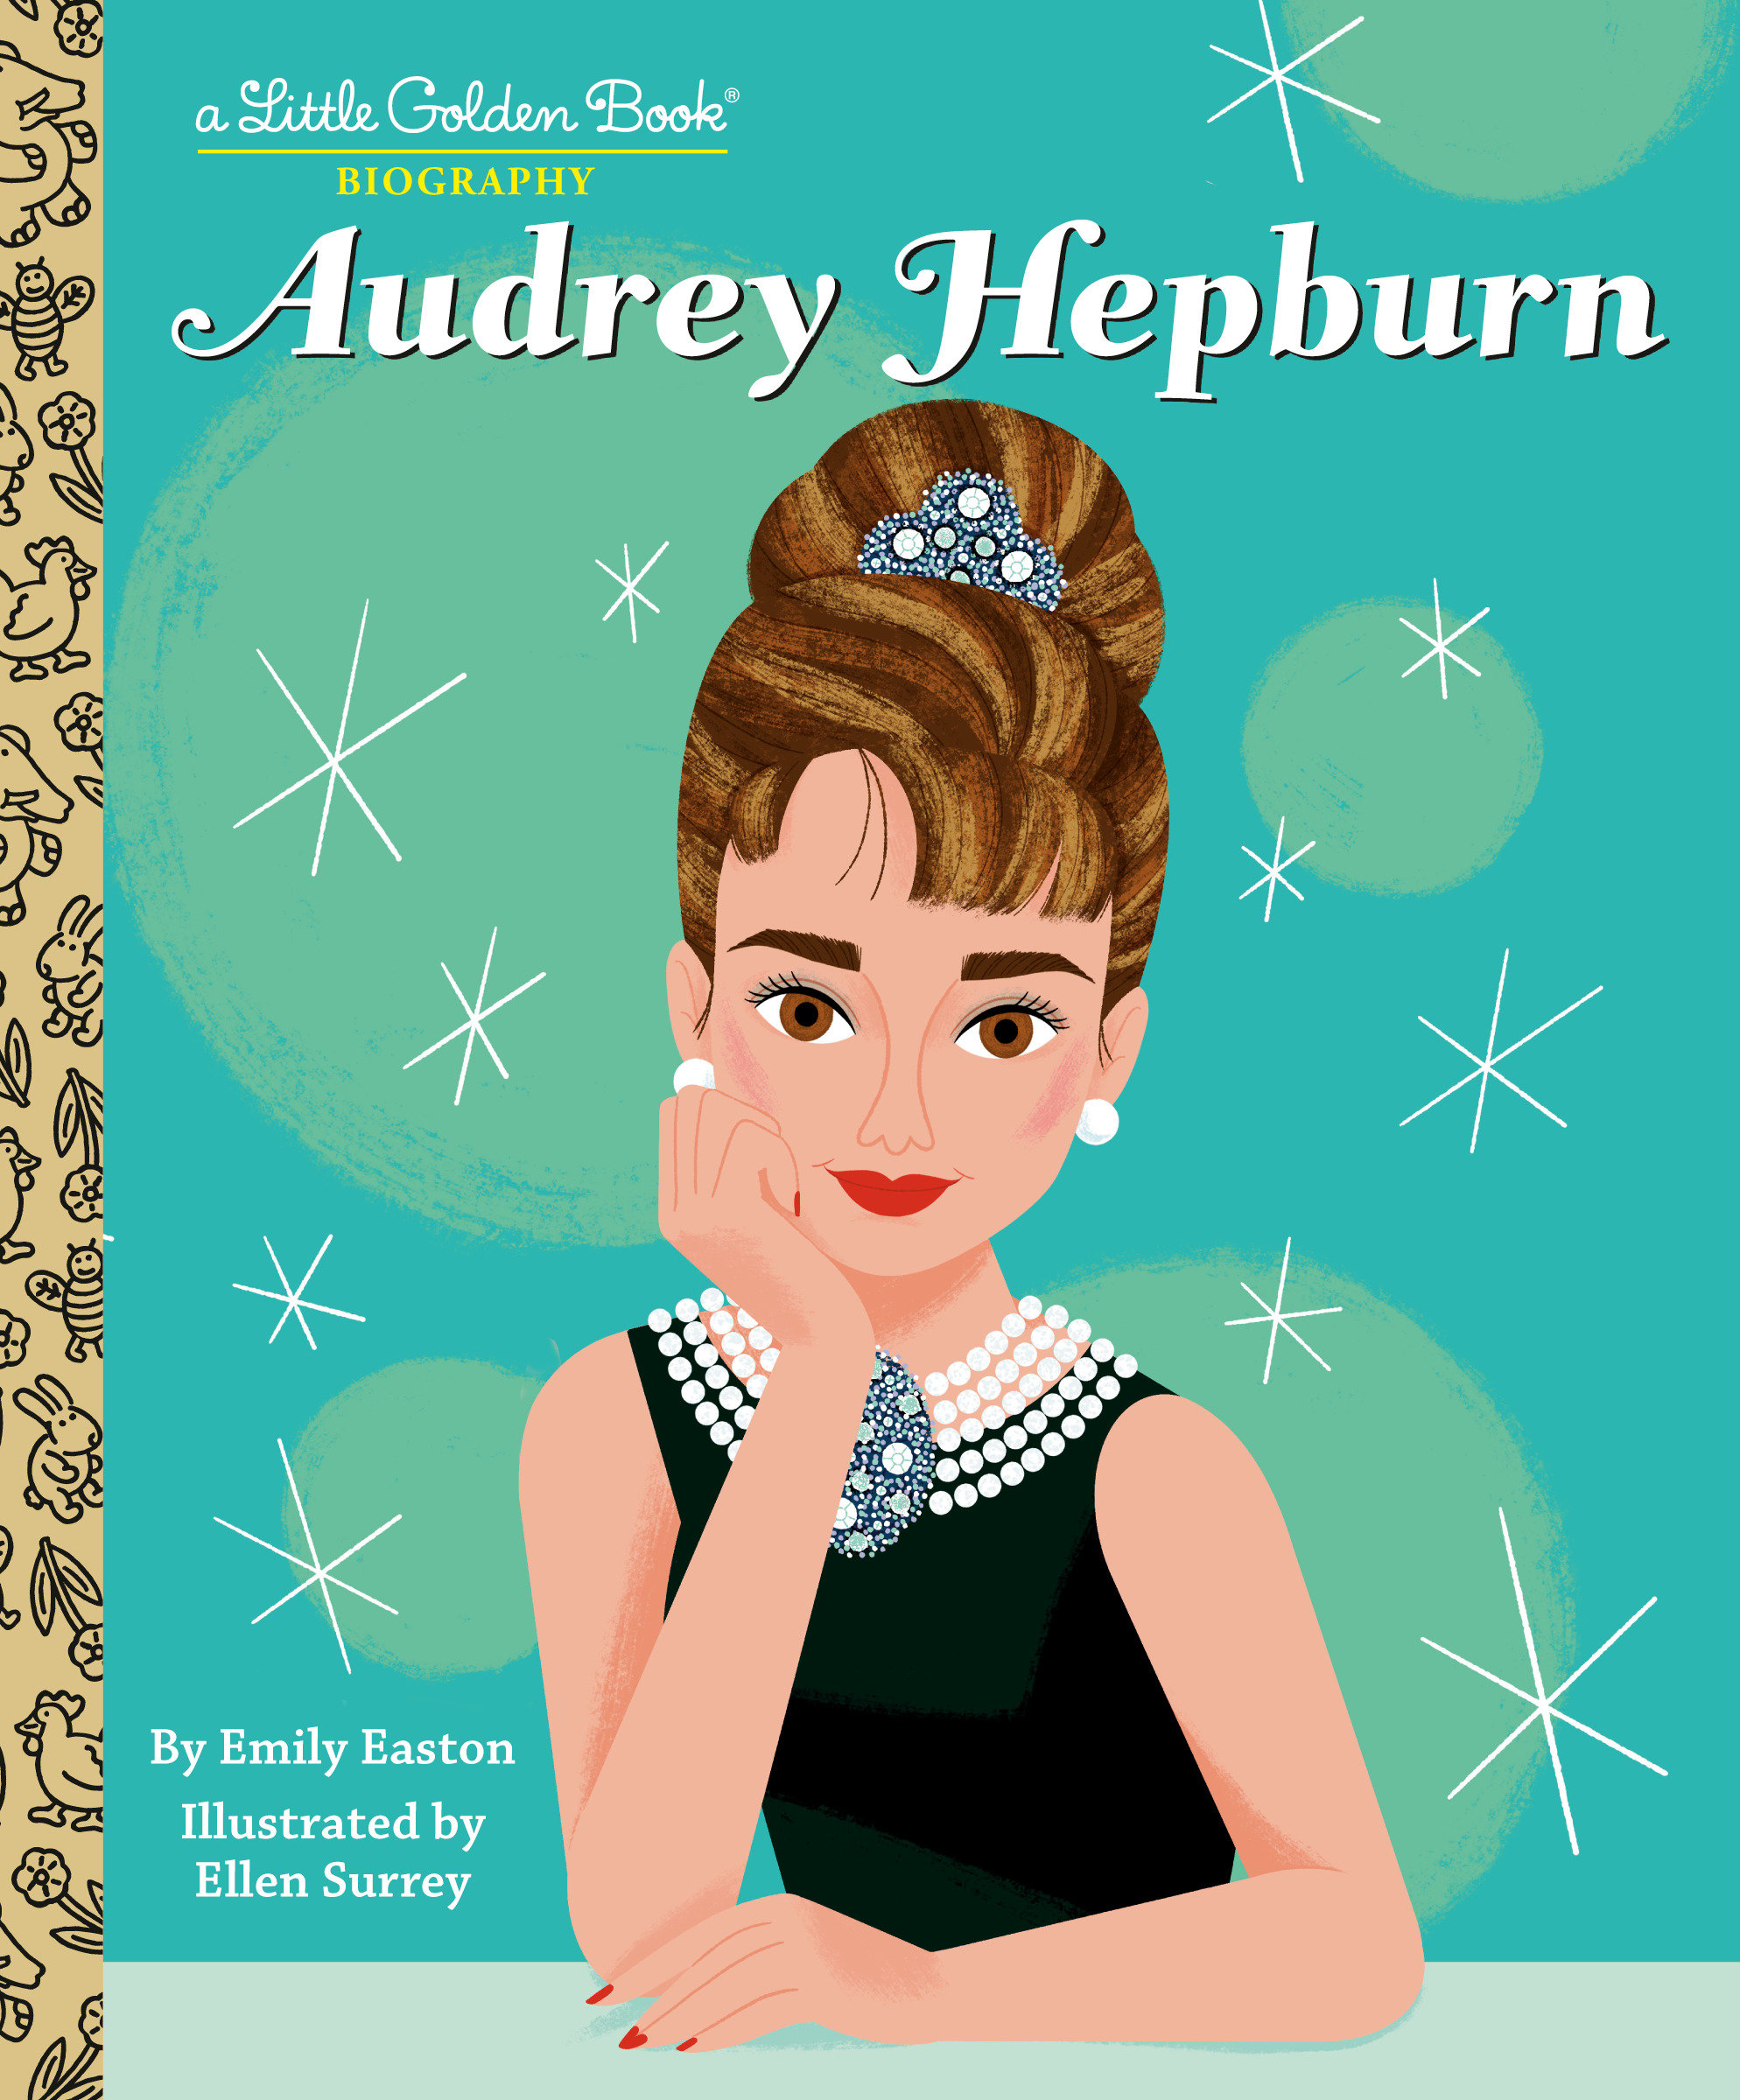 Audrey Hepburn A Little Golden Book Biography